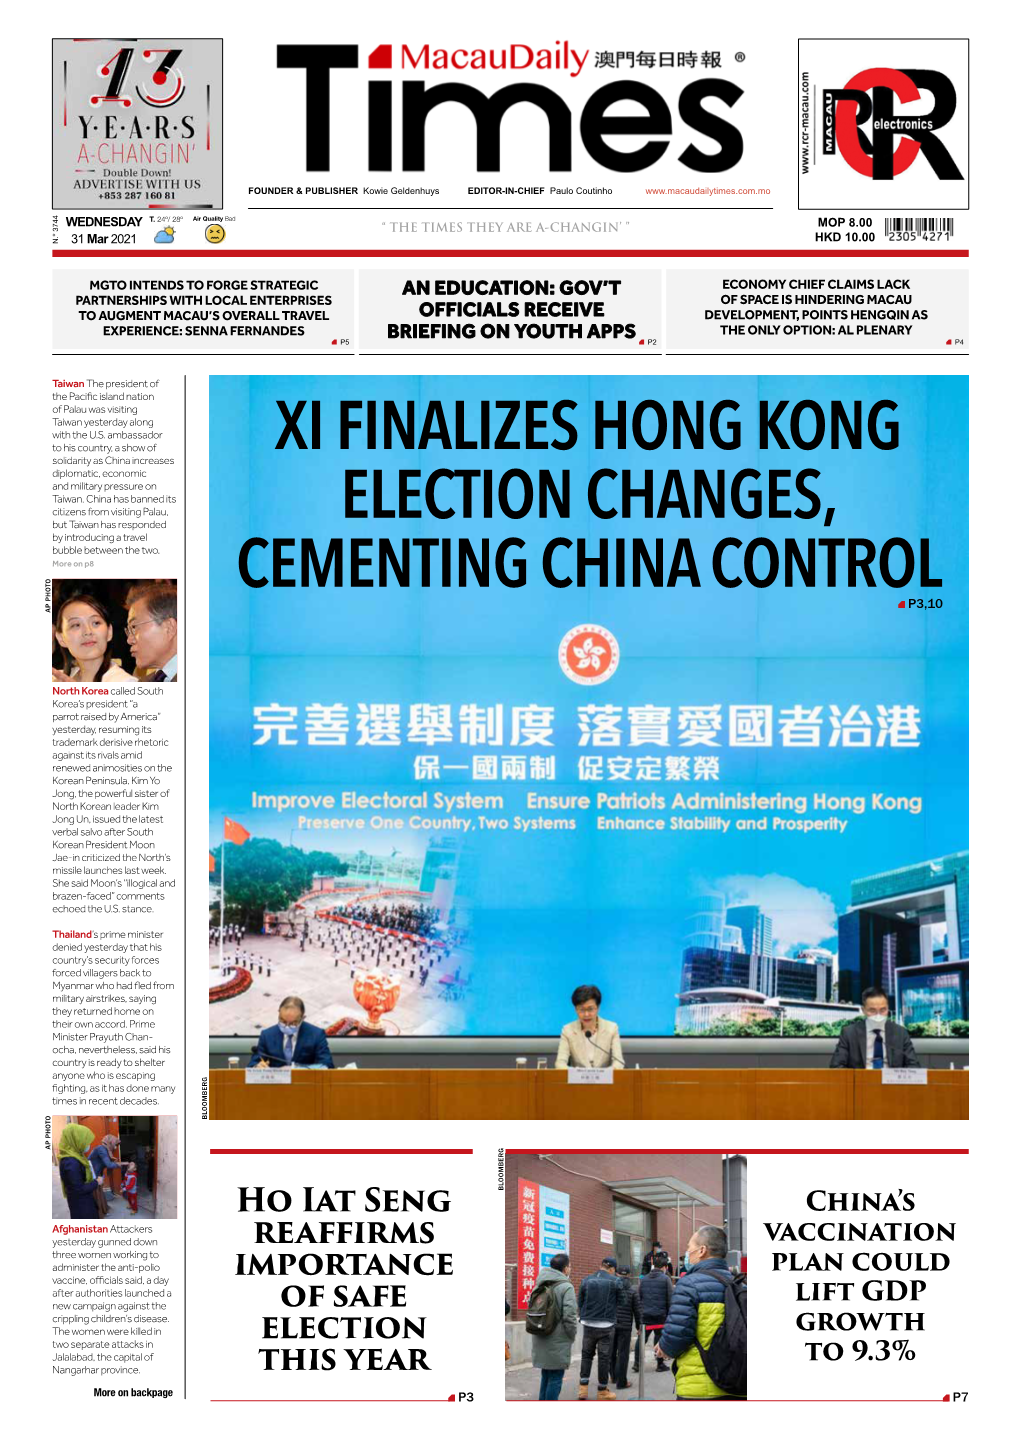 Xi Finalizes Hong Kong Election Changes